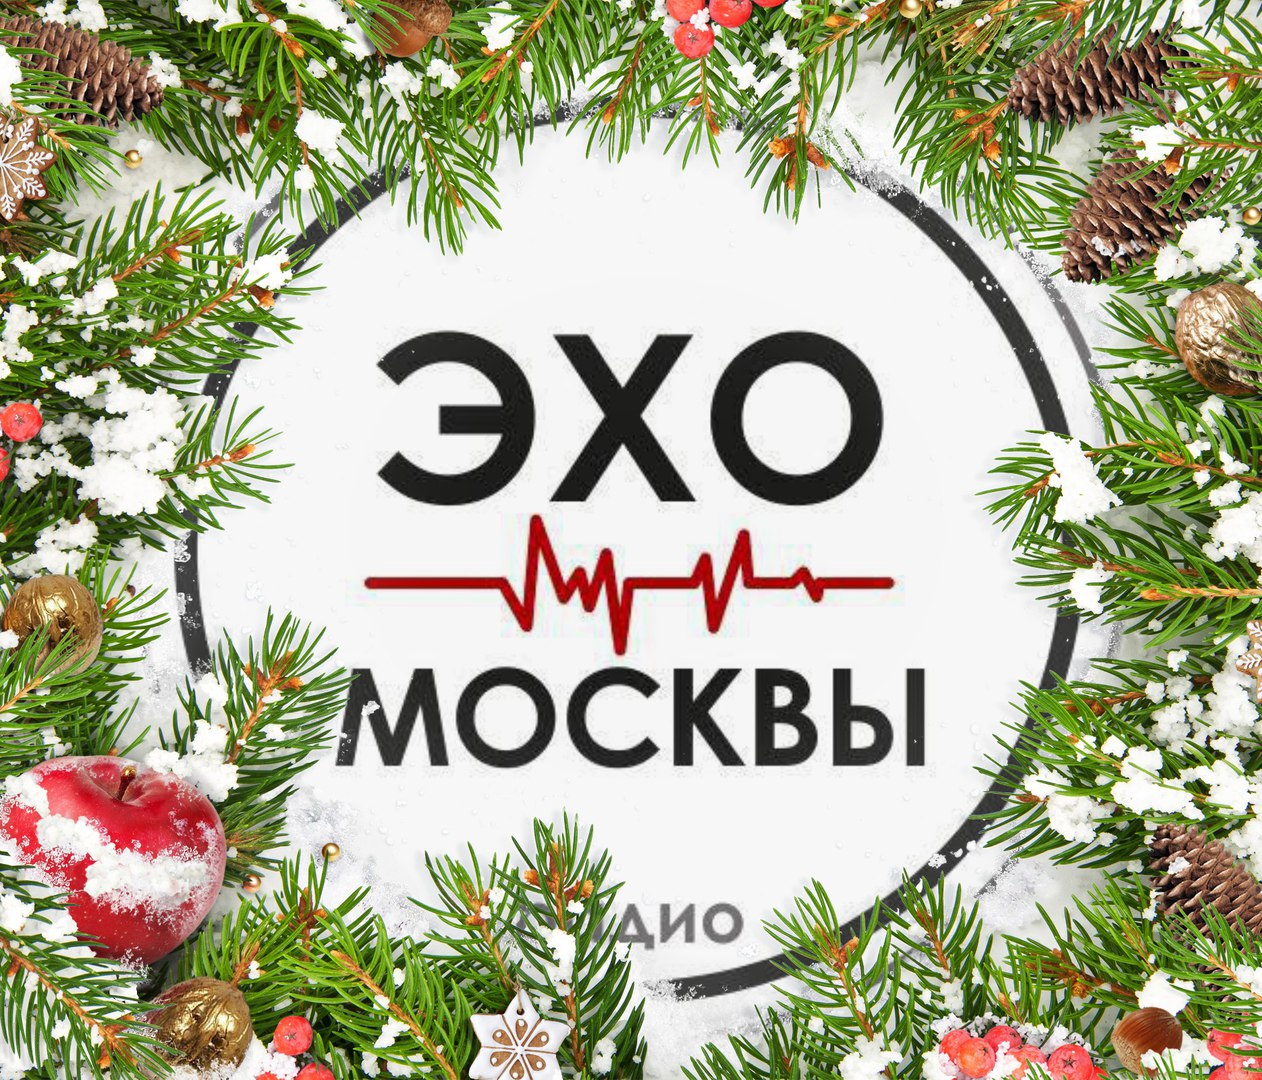 Новогодняя эмблема акции "Добро на радио" от "Эхо Москвы"